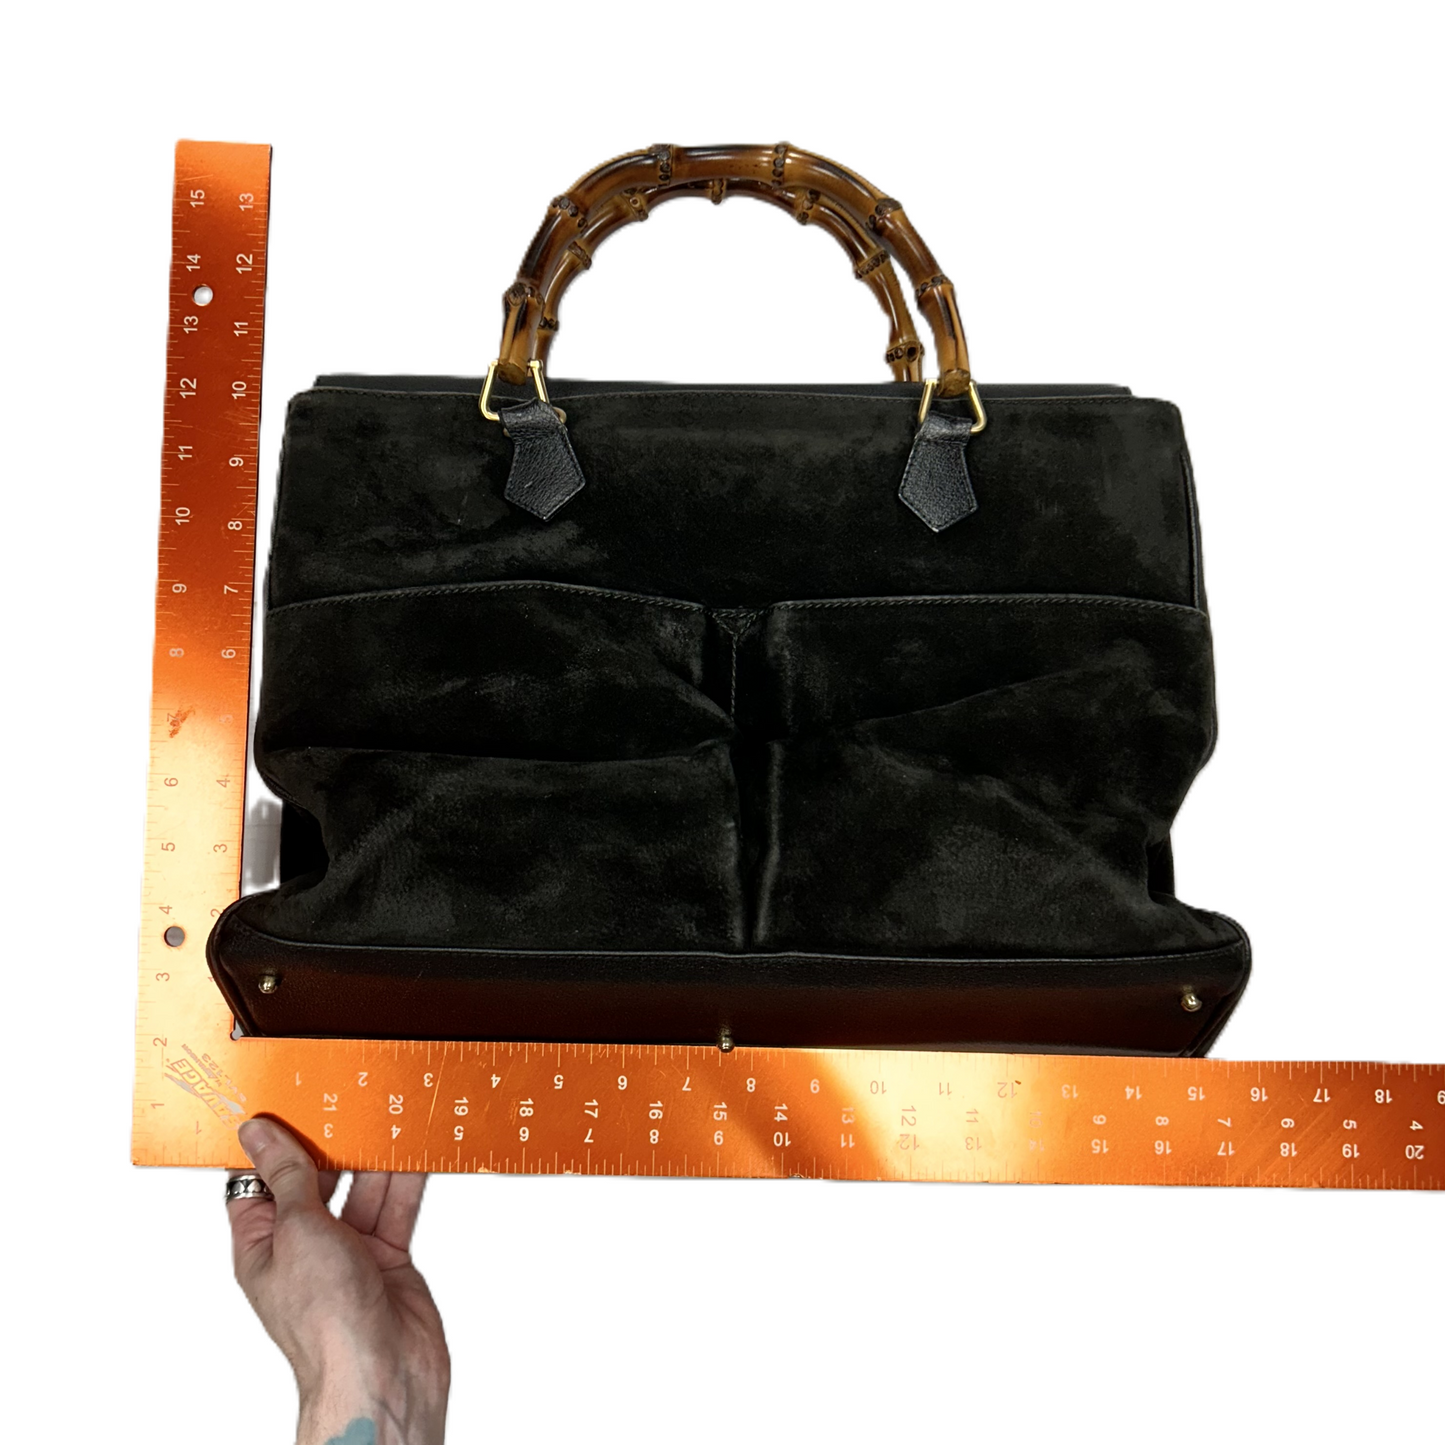 Handbag Designer By Gucci, Size: Medium